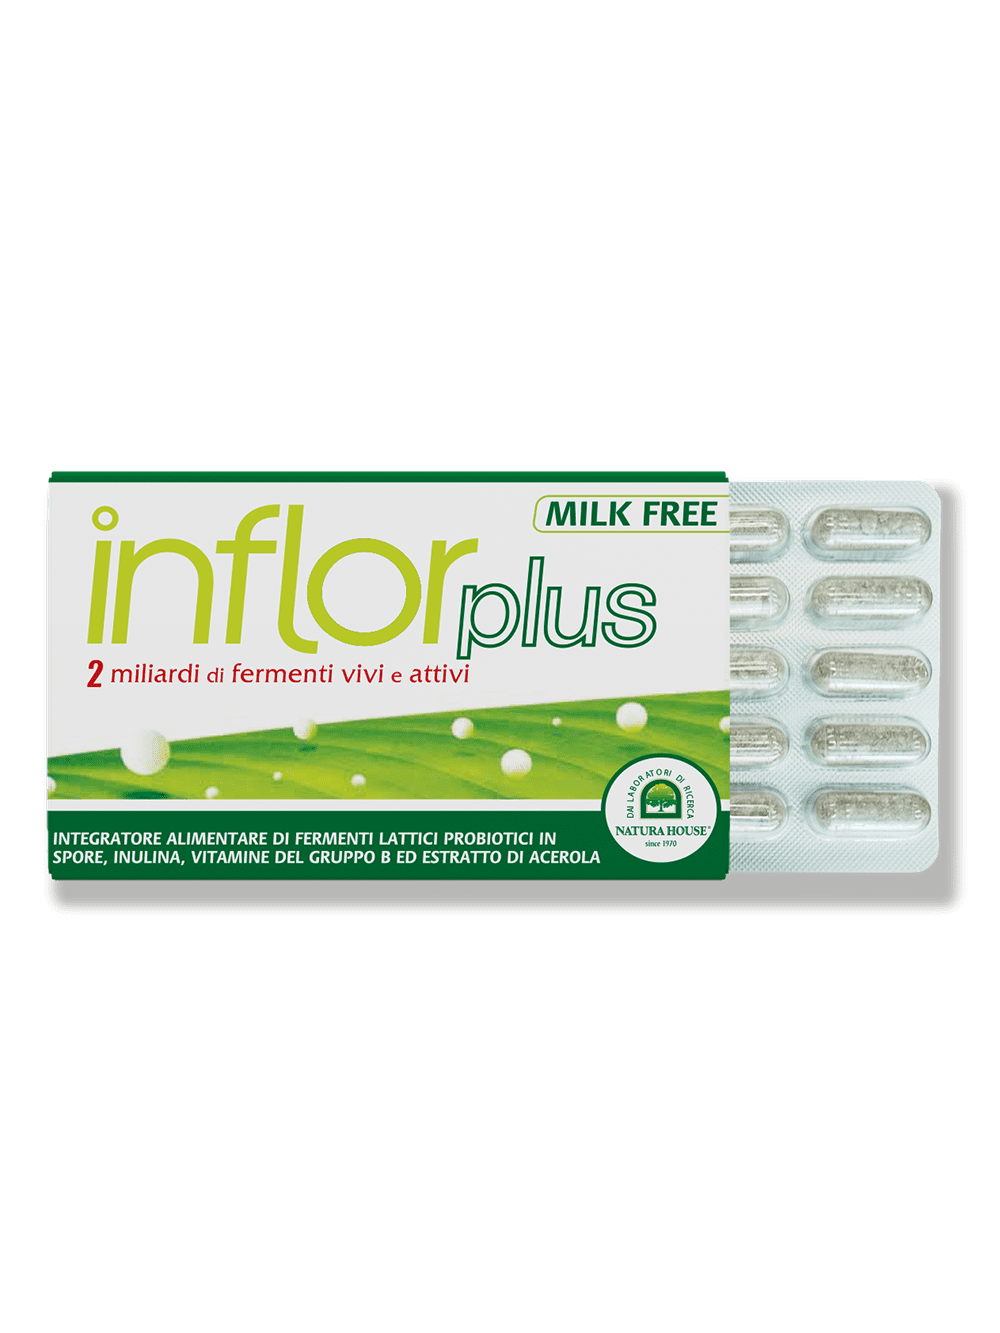 INFLOR PLUS Fermenti Lattici Probiotici in Spore vivi e attivi (2 Miliardi), prebiotico, Vitamine C e gruppo B